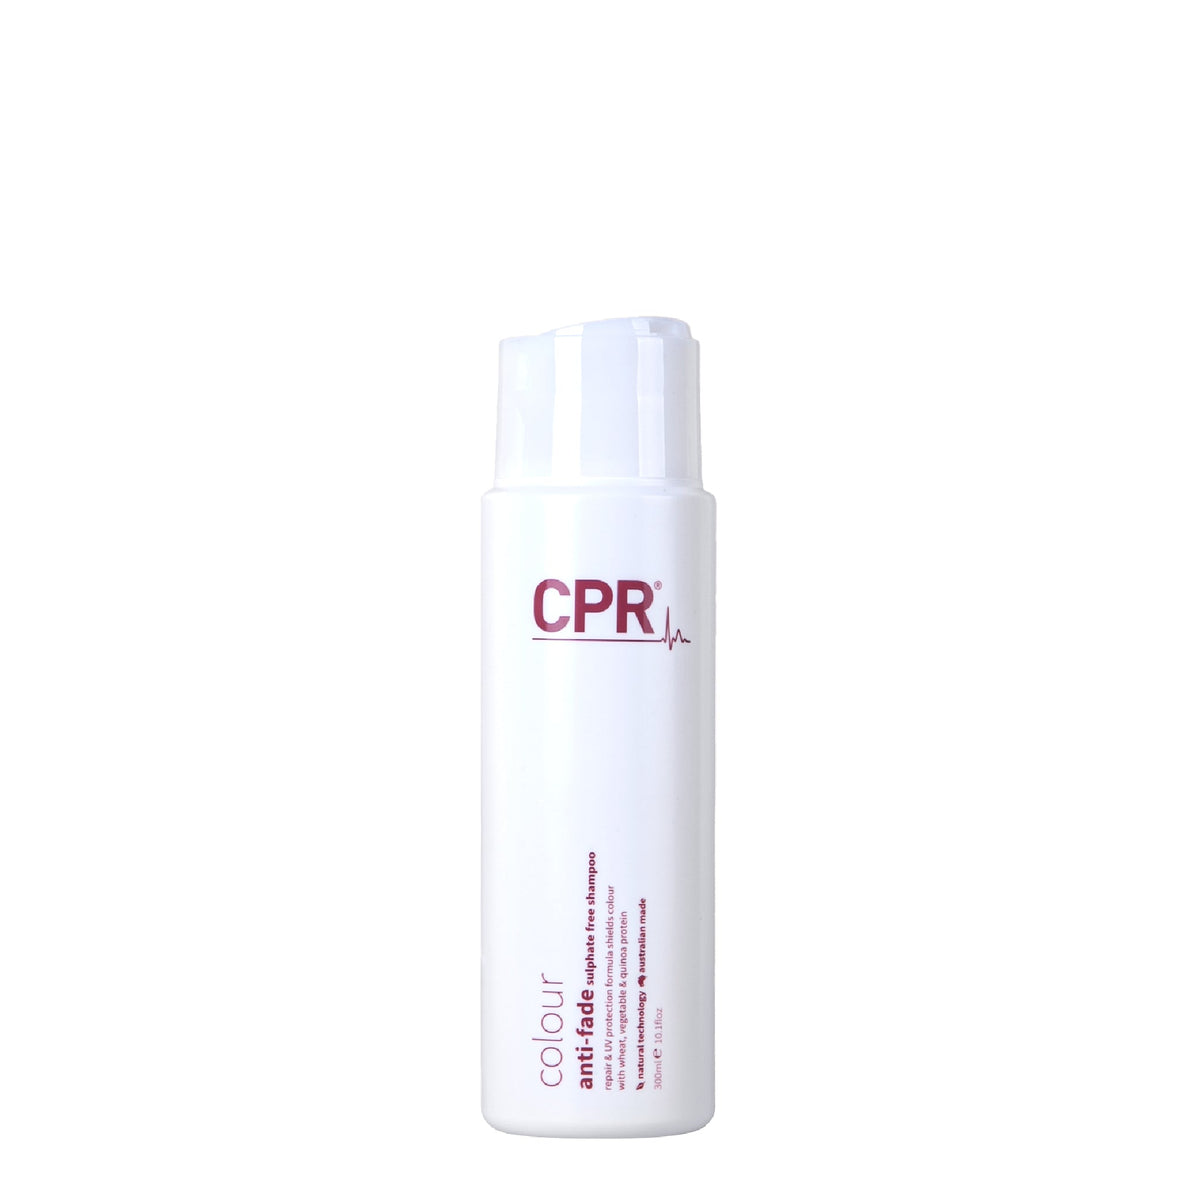 Vitafive CPR Anti-Fade Shampoo - Haircare Superstore